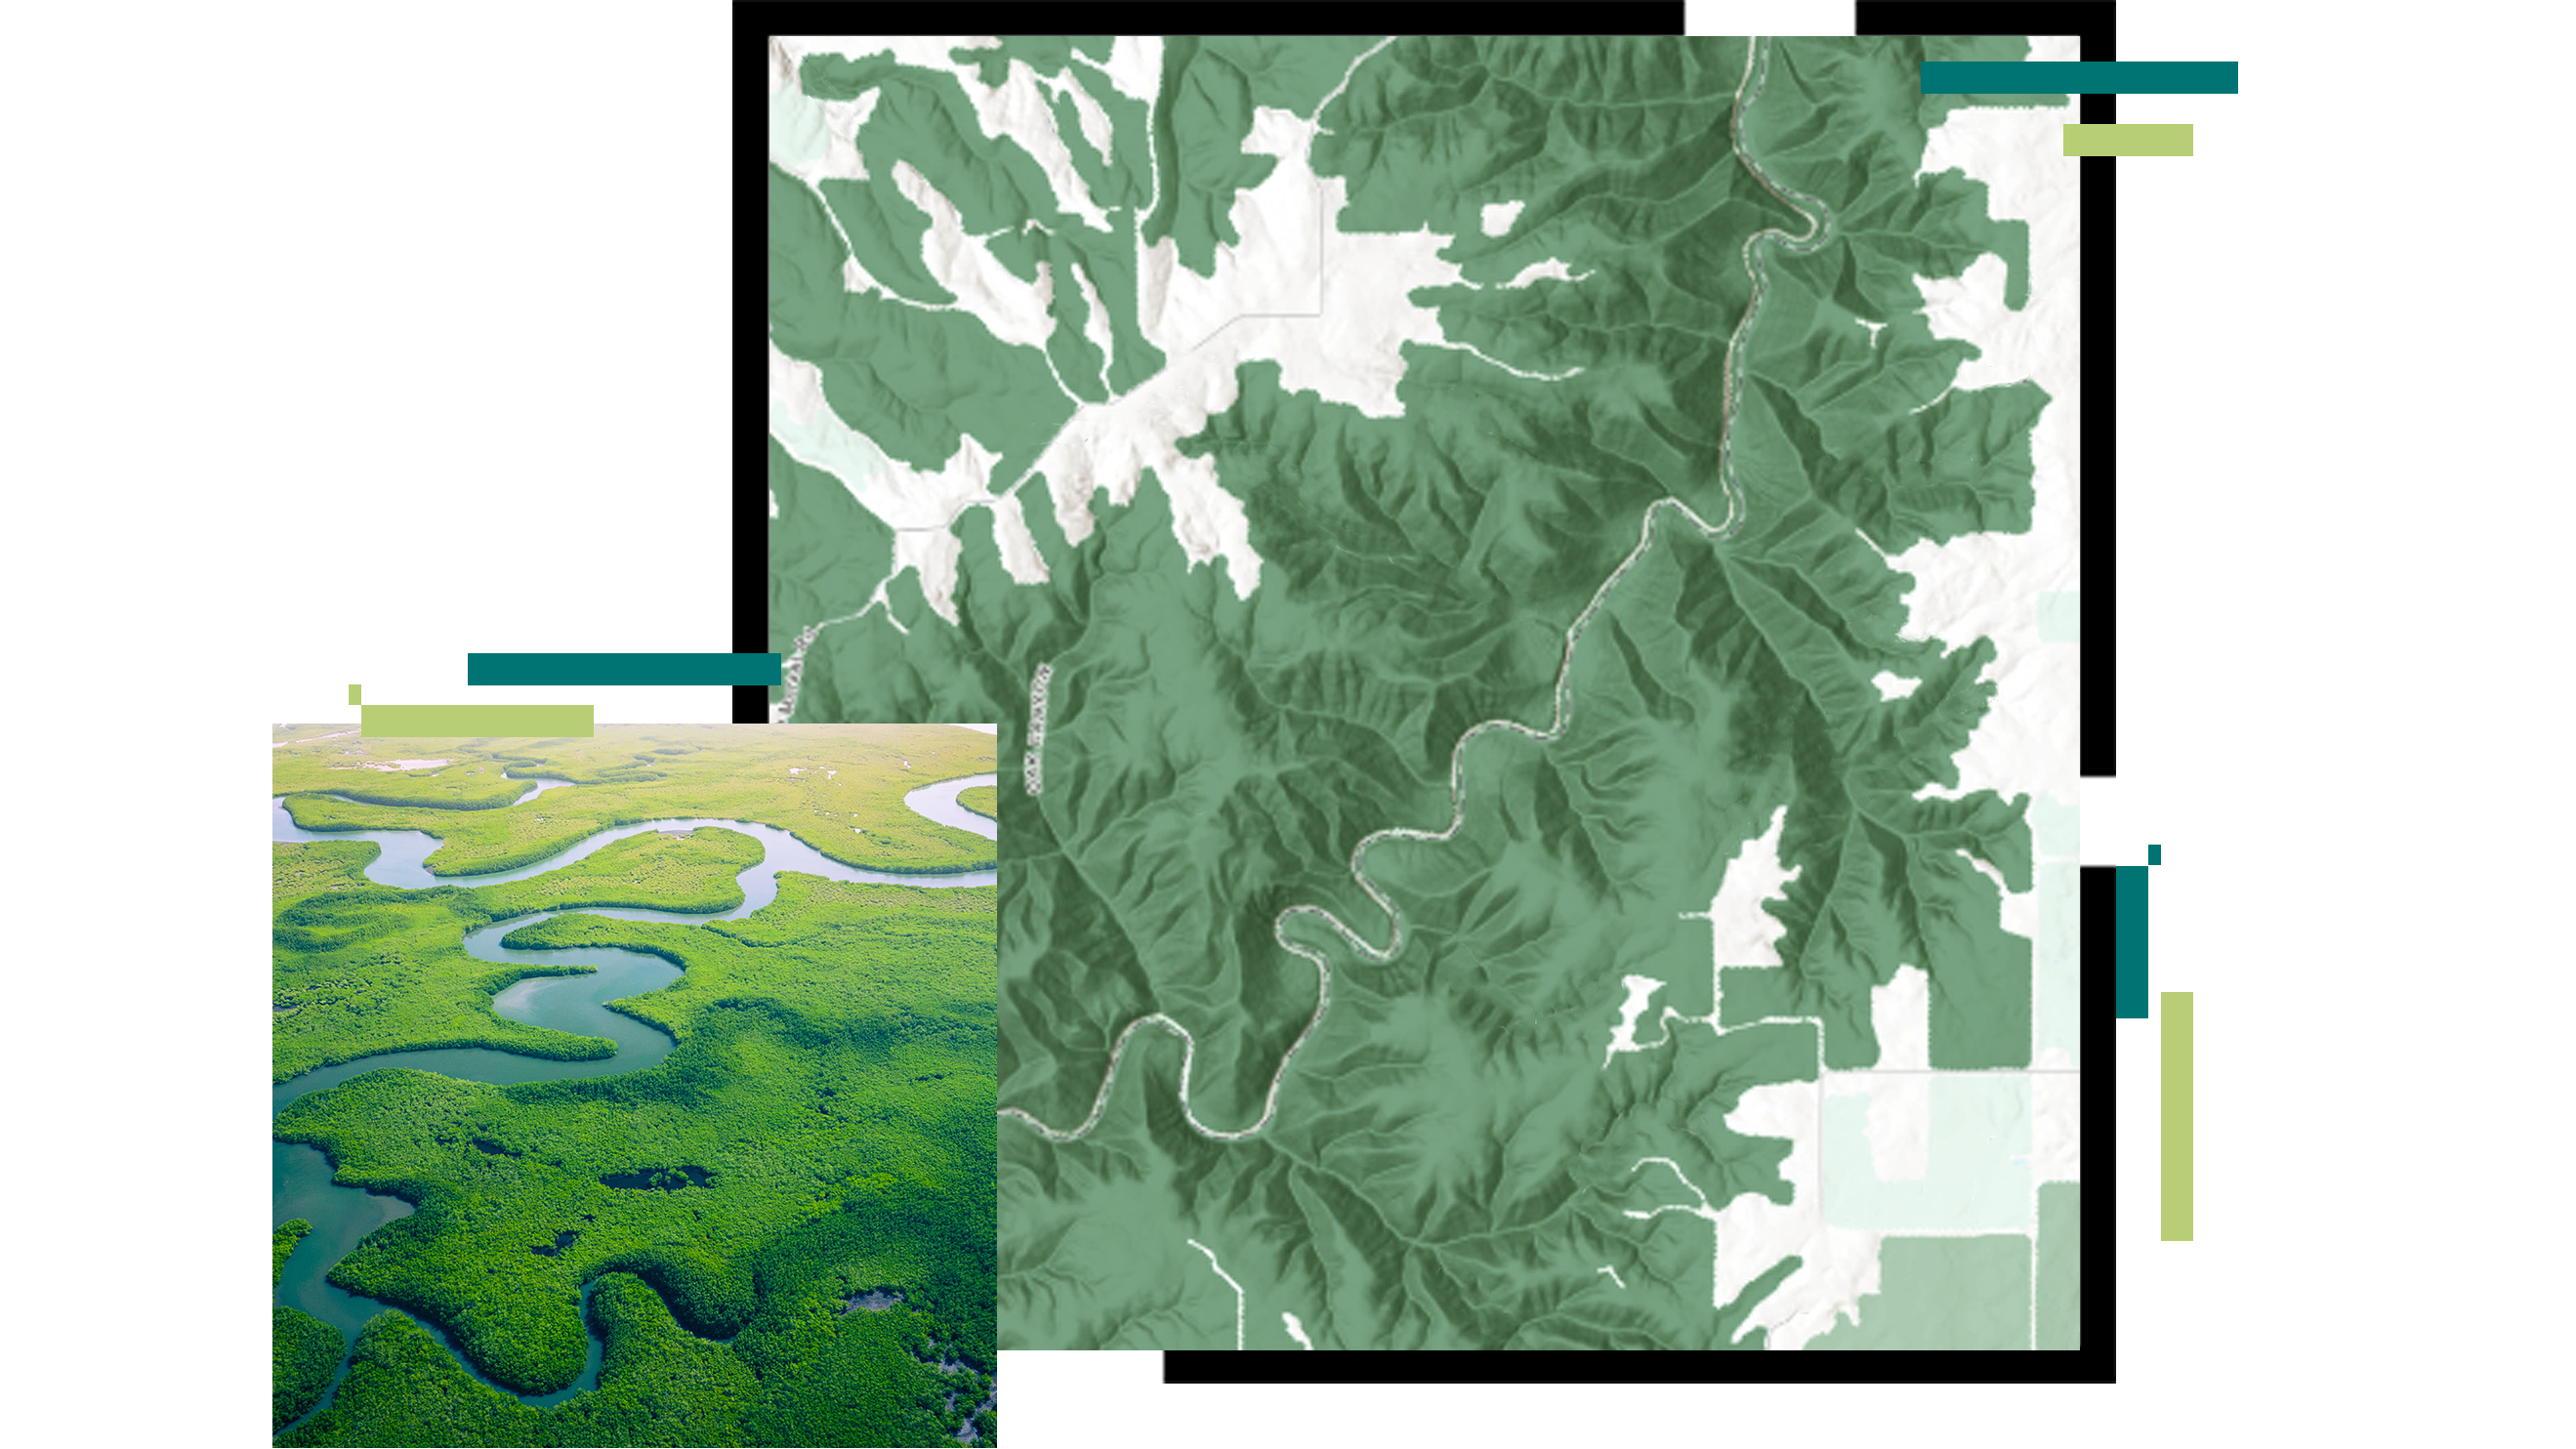 Mapa rzeźby terenu przedstawiająca krętą rzekę; na obraz nałożono zdjęcie lotnicze jasnozielonego lasu namorzynowego z przepływającą błękitną rzeką